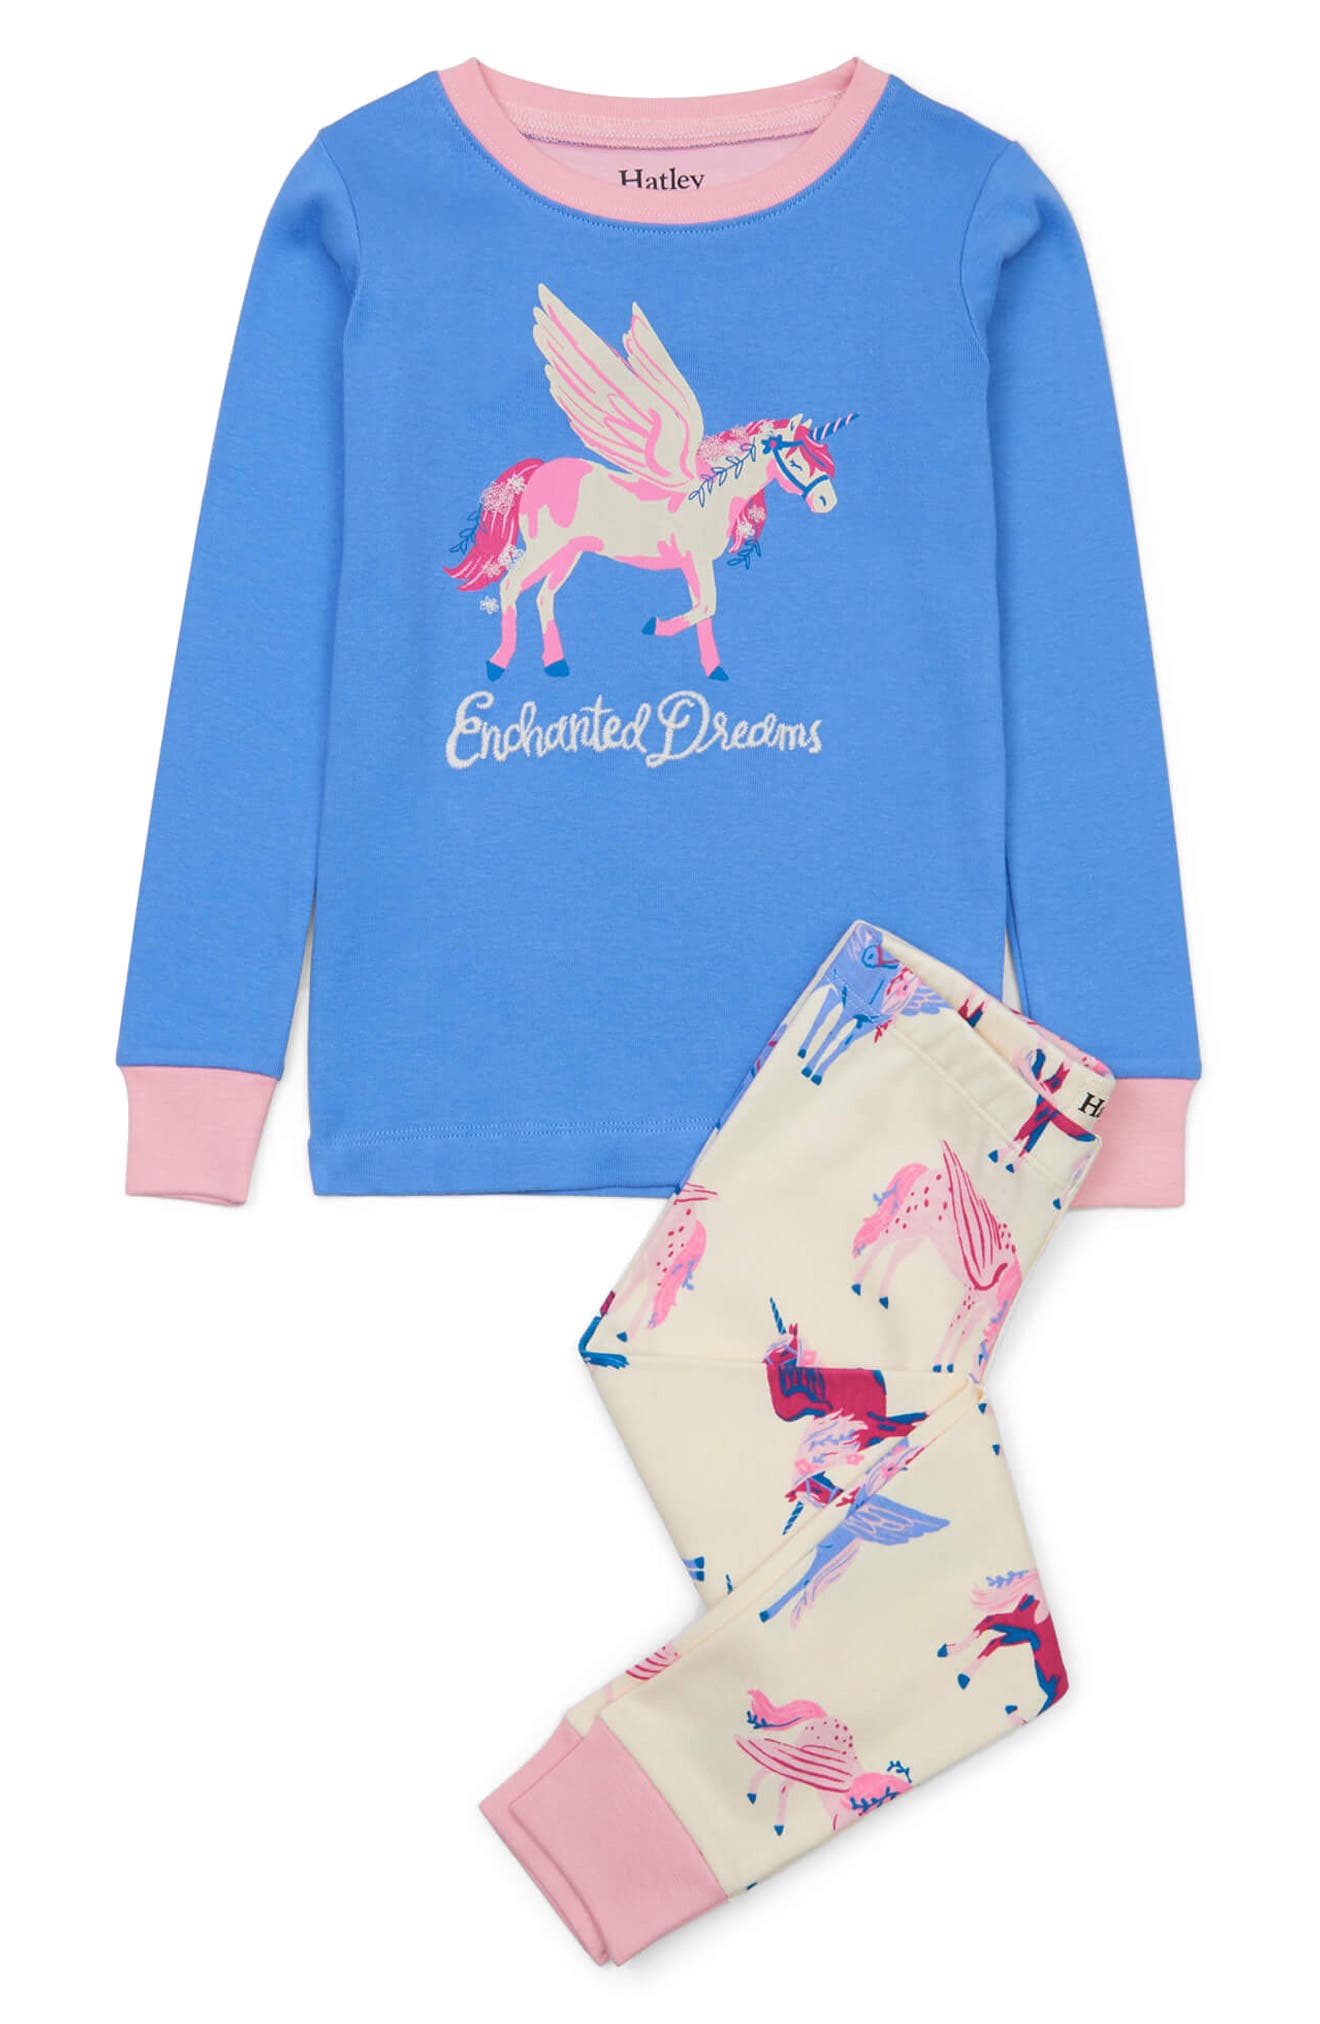 6841円 公式ストア 取寄 ハットレイ ガールズ オーガニック コットン ショート スリーブ プリンテッド パジャマ セッツ Hatley girls Girls Organic Cotton Short Sleeve Printed Pajama Sets Blue